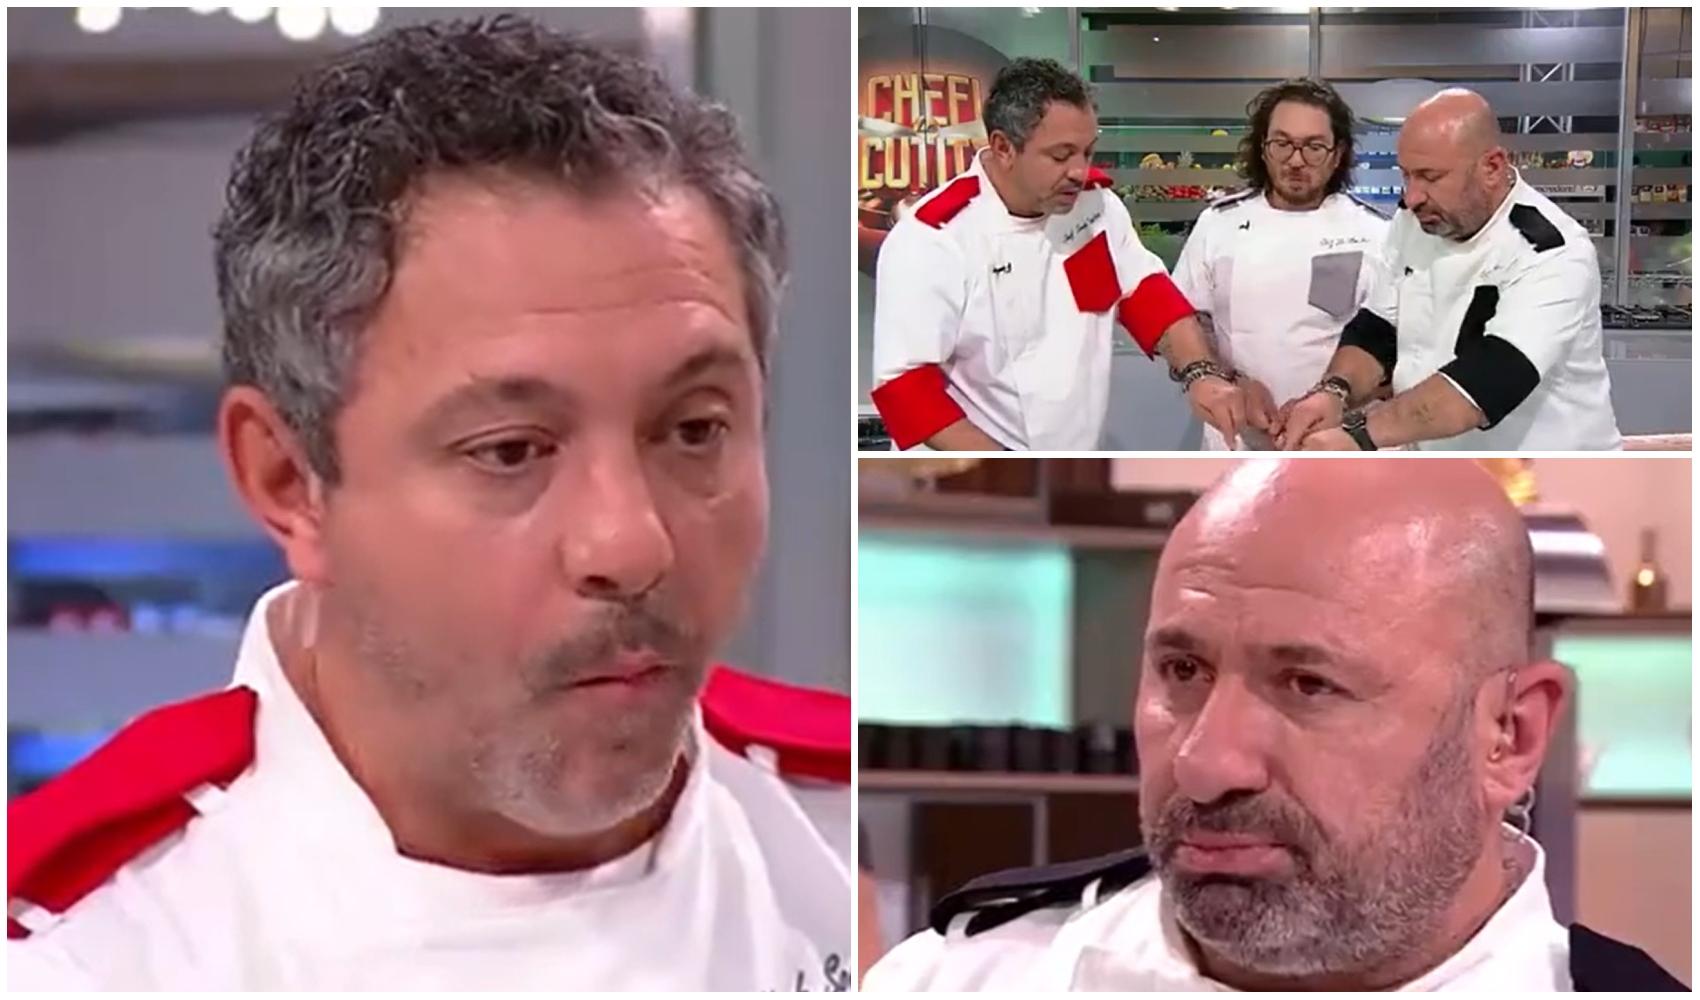 Ce au făcut Sorin Bontea, Florin Dumitrescu și Cătălin Scărlătescu în timpul unei degustări, la Chefi la cuțite sezonul 11